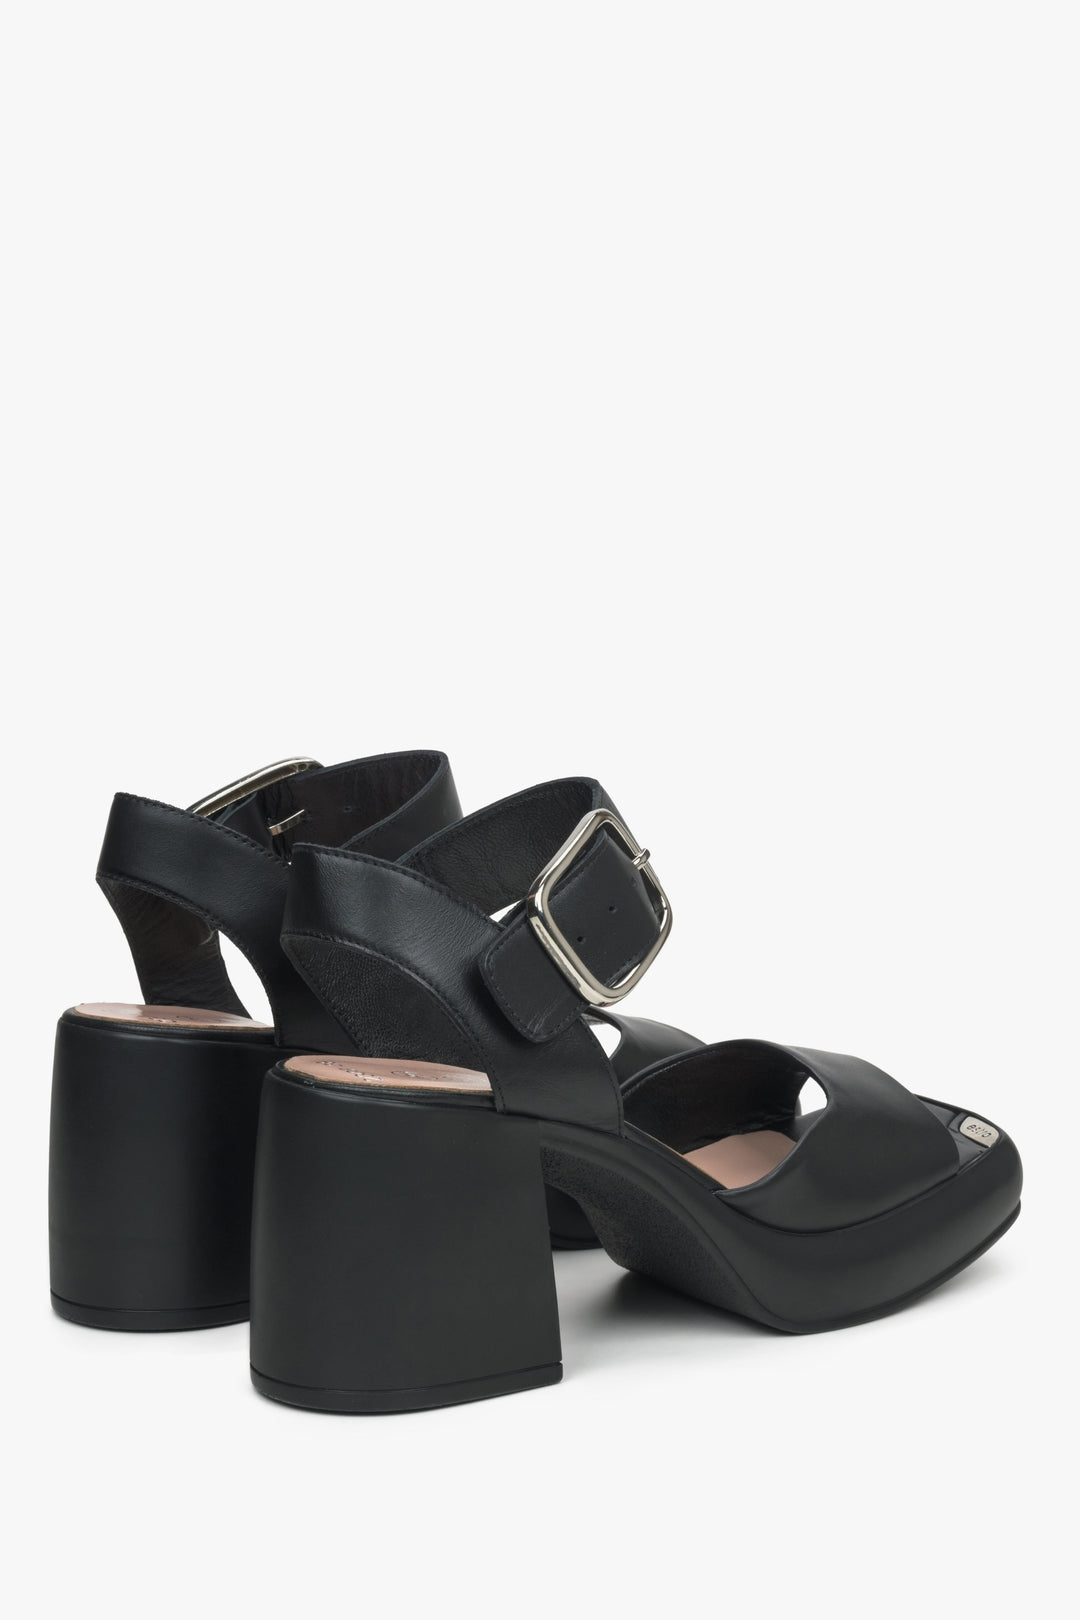 Skórzane czarne sandały damskie Estro - zbliżenie na obcas i linię boczną buta.